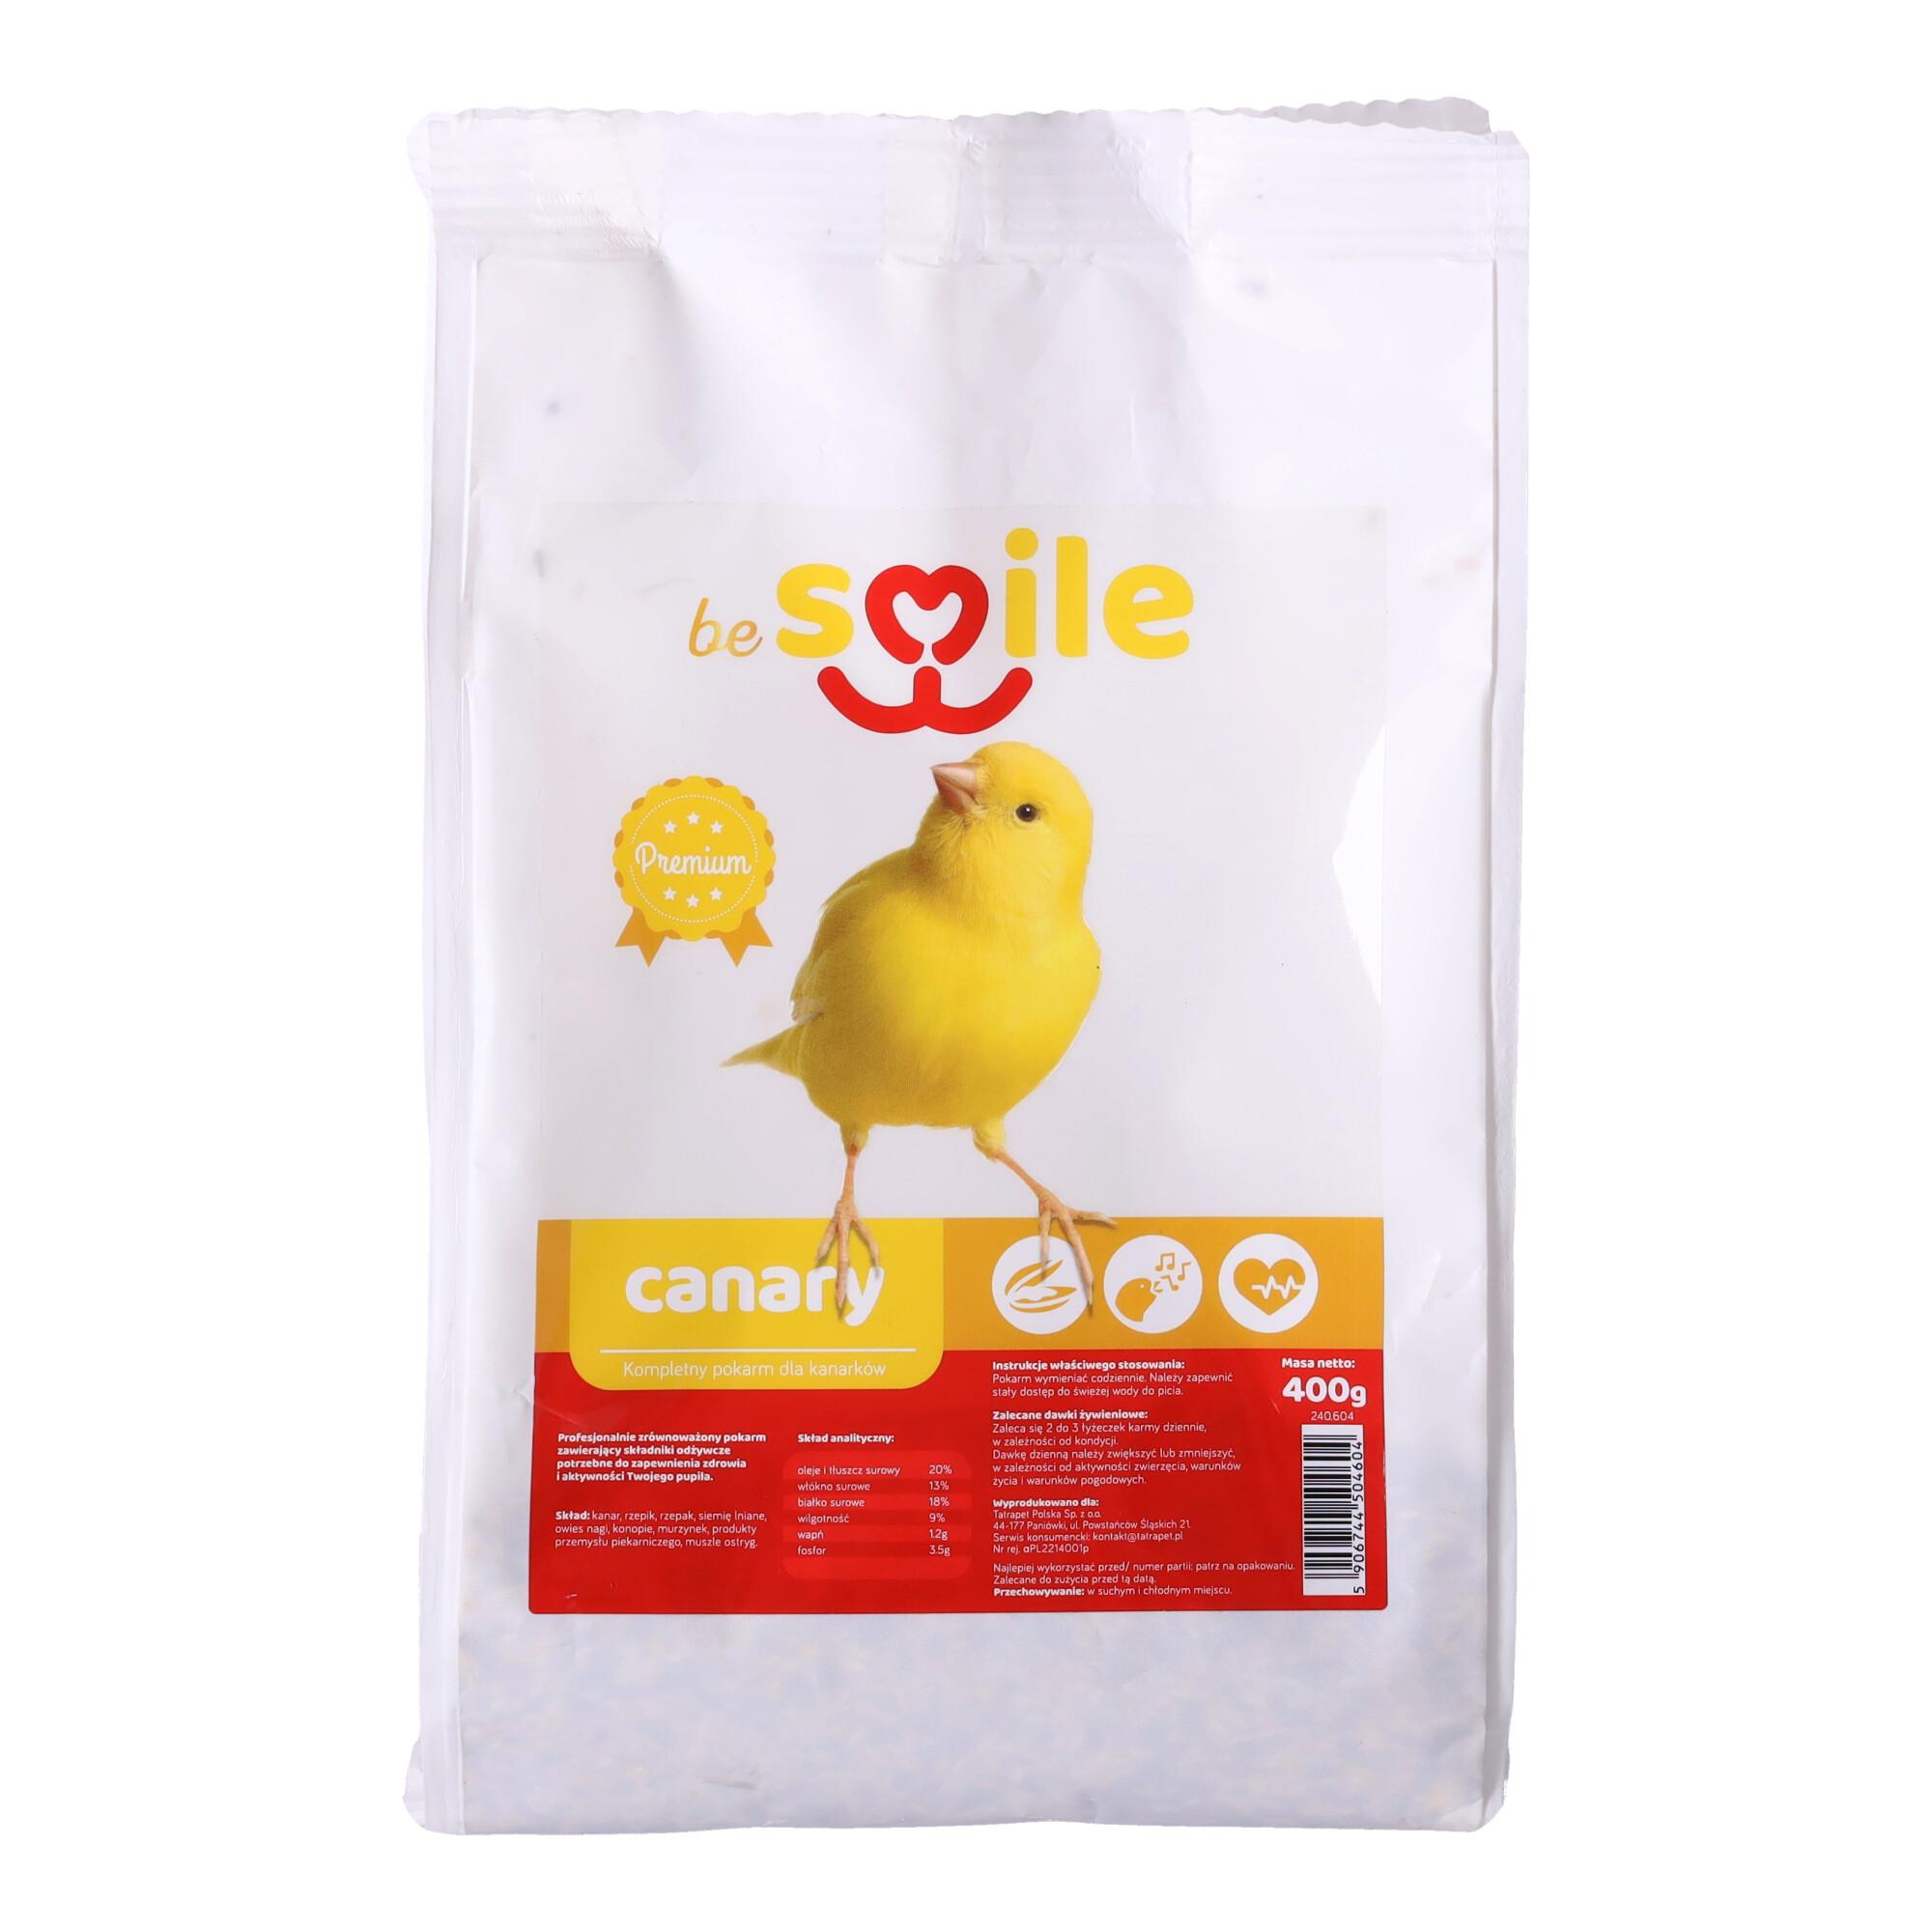 Karma beSMILE CANARY- Canary 400g pokarm dla kanarków